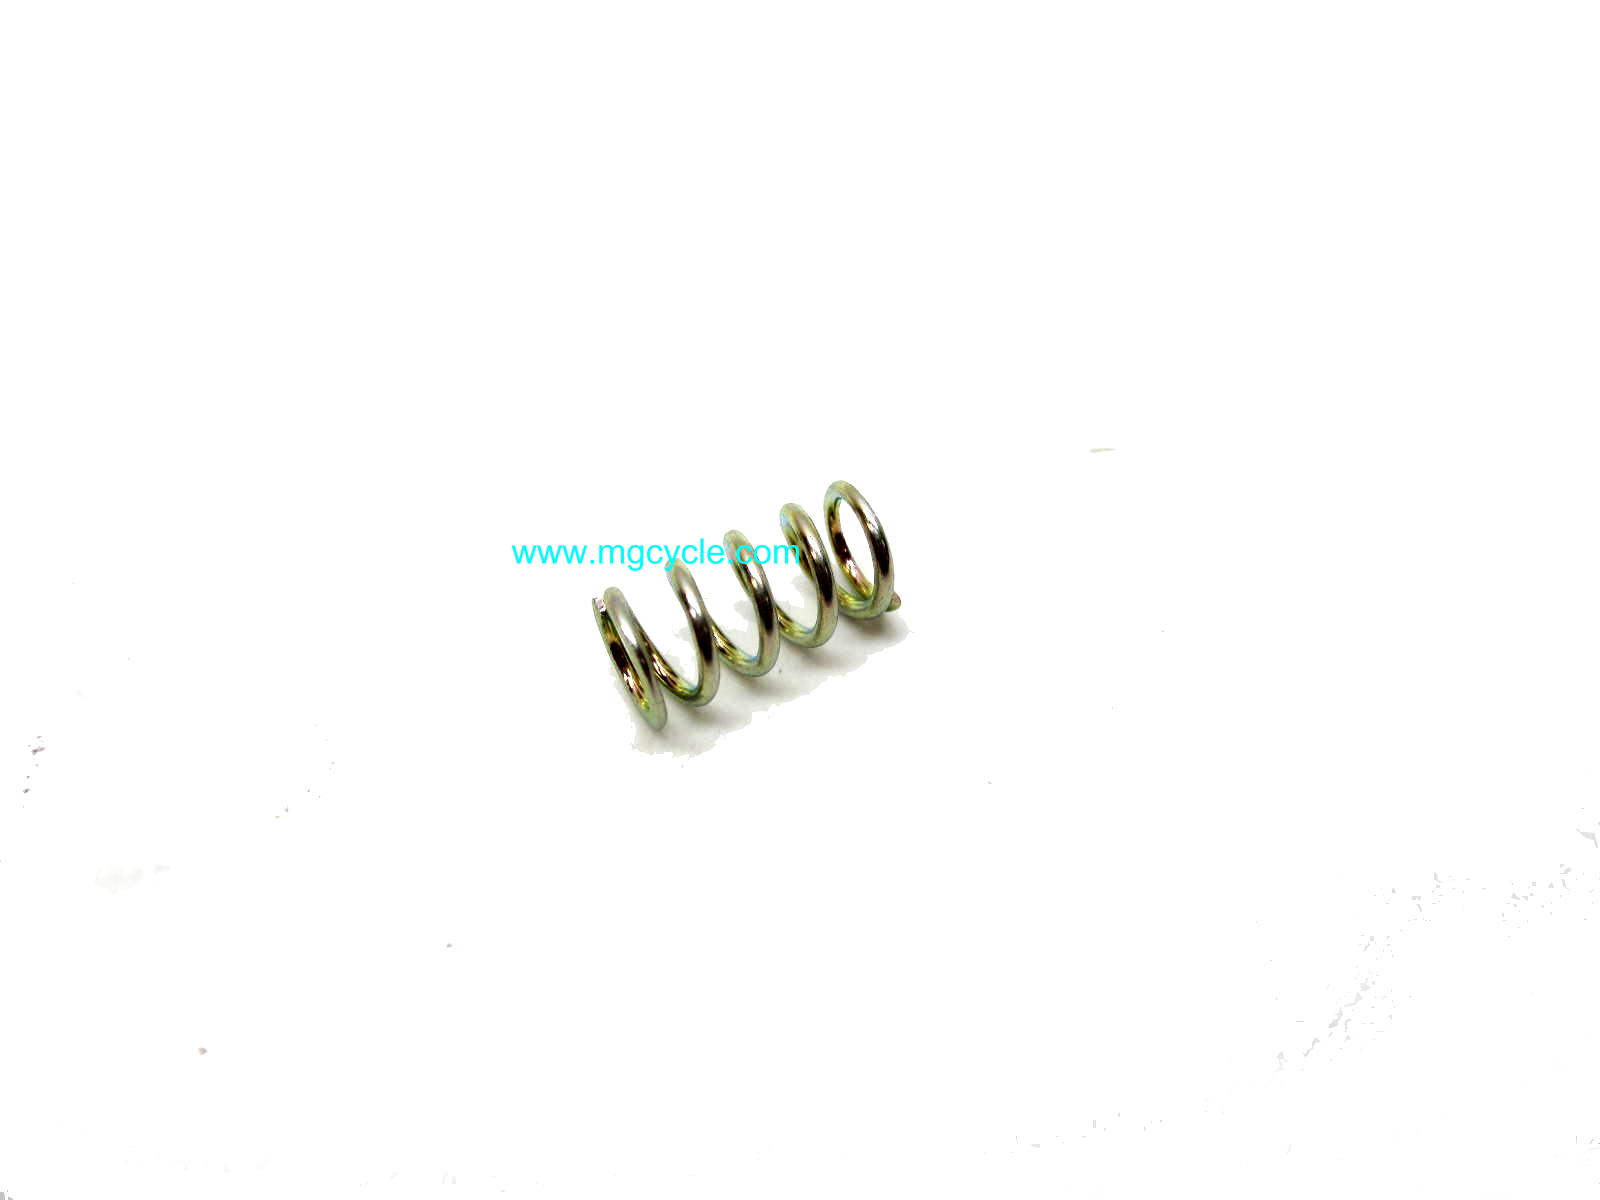 Dellorto 4670 idle screw adjuster spring 13936700 - Click Image to Close